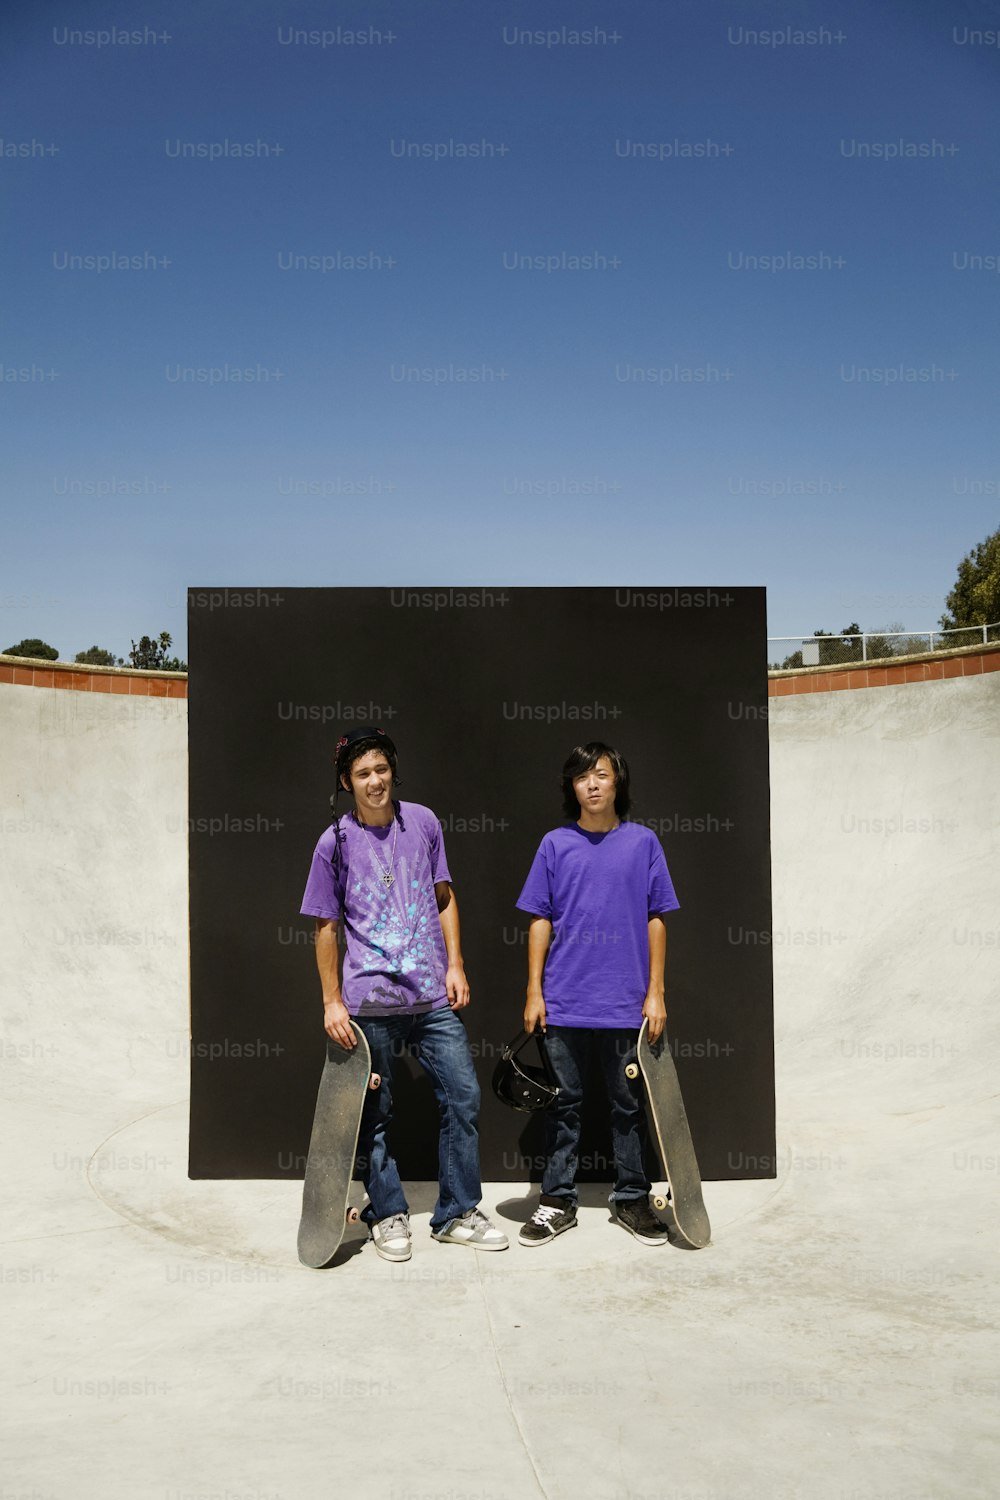 スケートボードを持って隣同士に立っている若い男性が数人